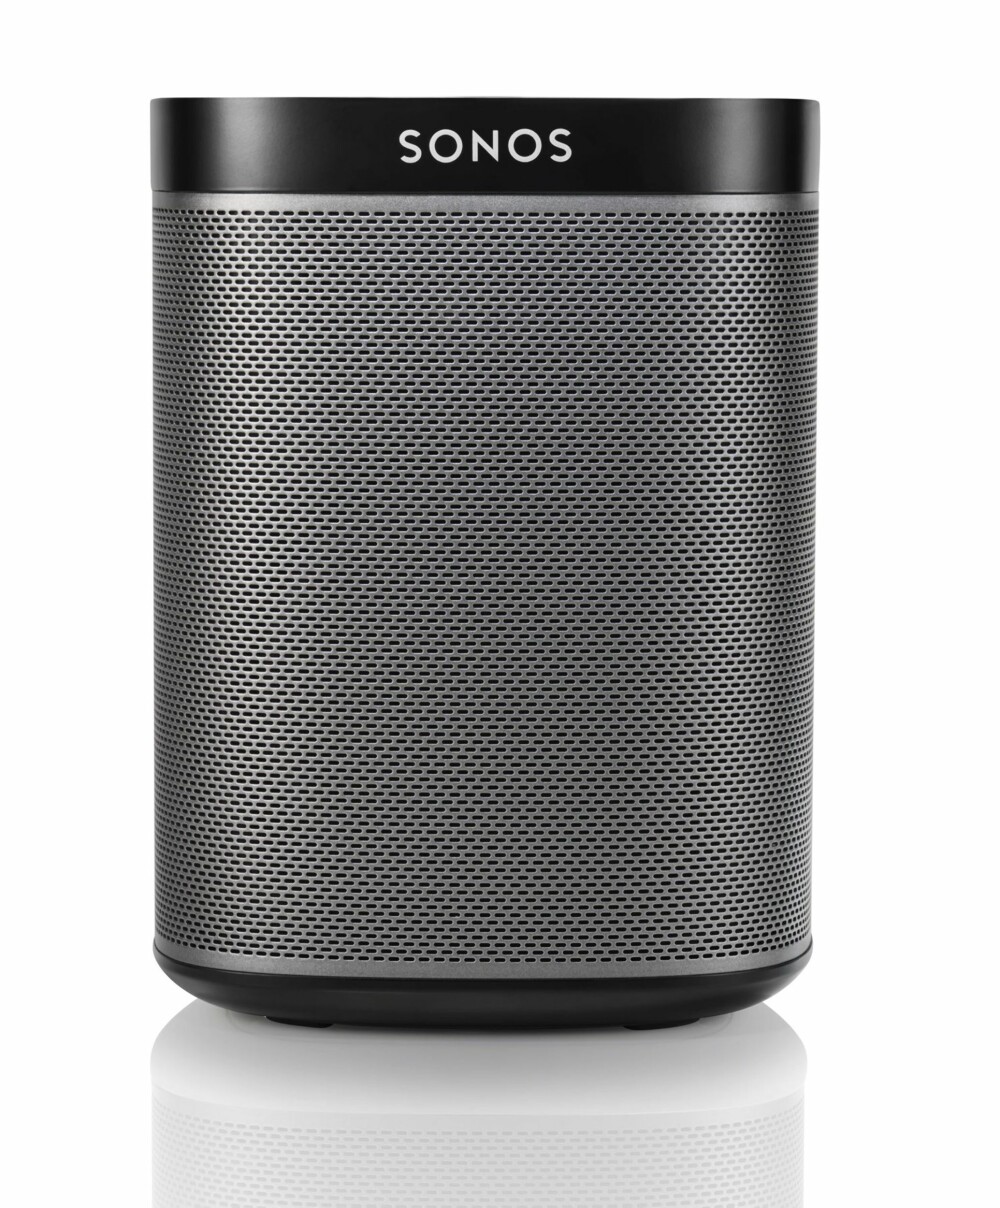 KOMPAKT: Me den diameter på cirka 12 cm og en høyde på 16 cm er Sonos Play:1 en liten og kompakt høyttaler som lett får plass på badehylla eller på nattbordet.